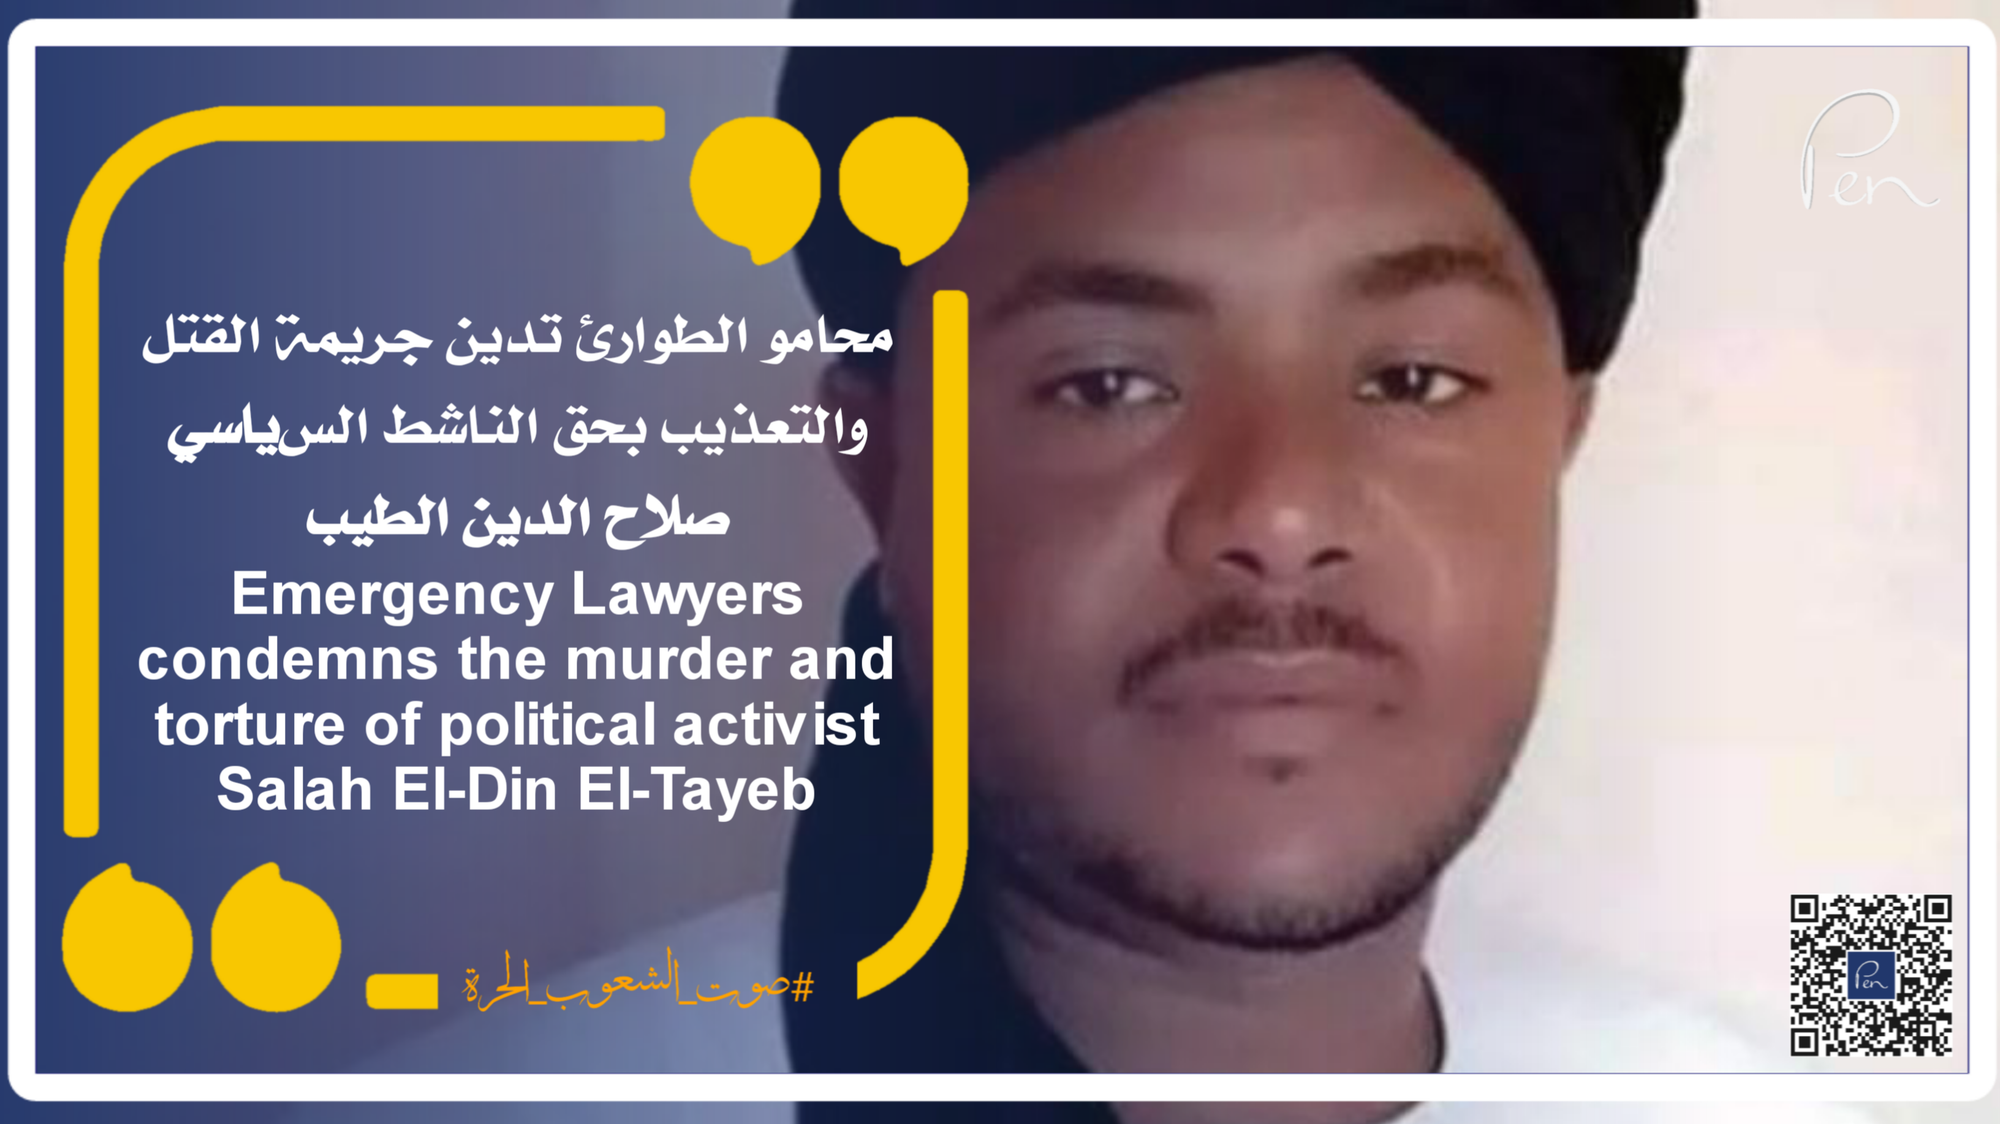 محامو الطوارئ تدين جريمة القتل والتعذيب بحق الناشط السياسي صلاح الدين الطيب